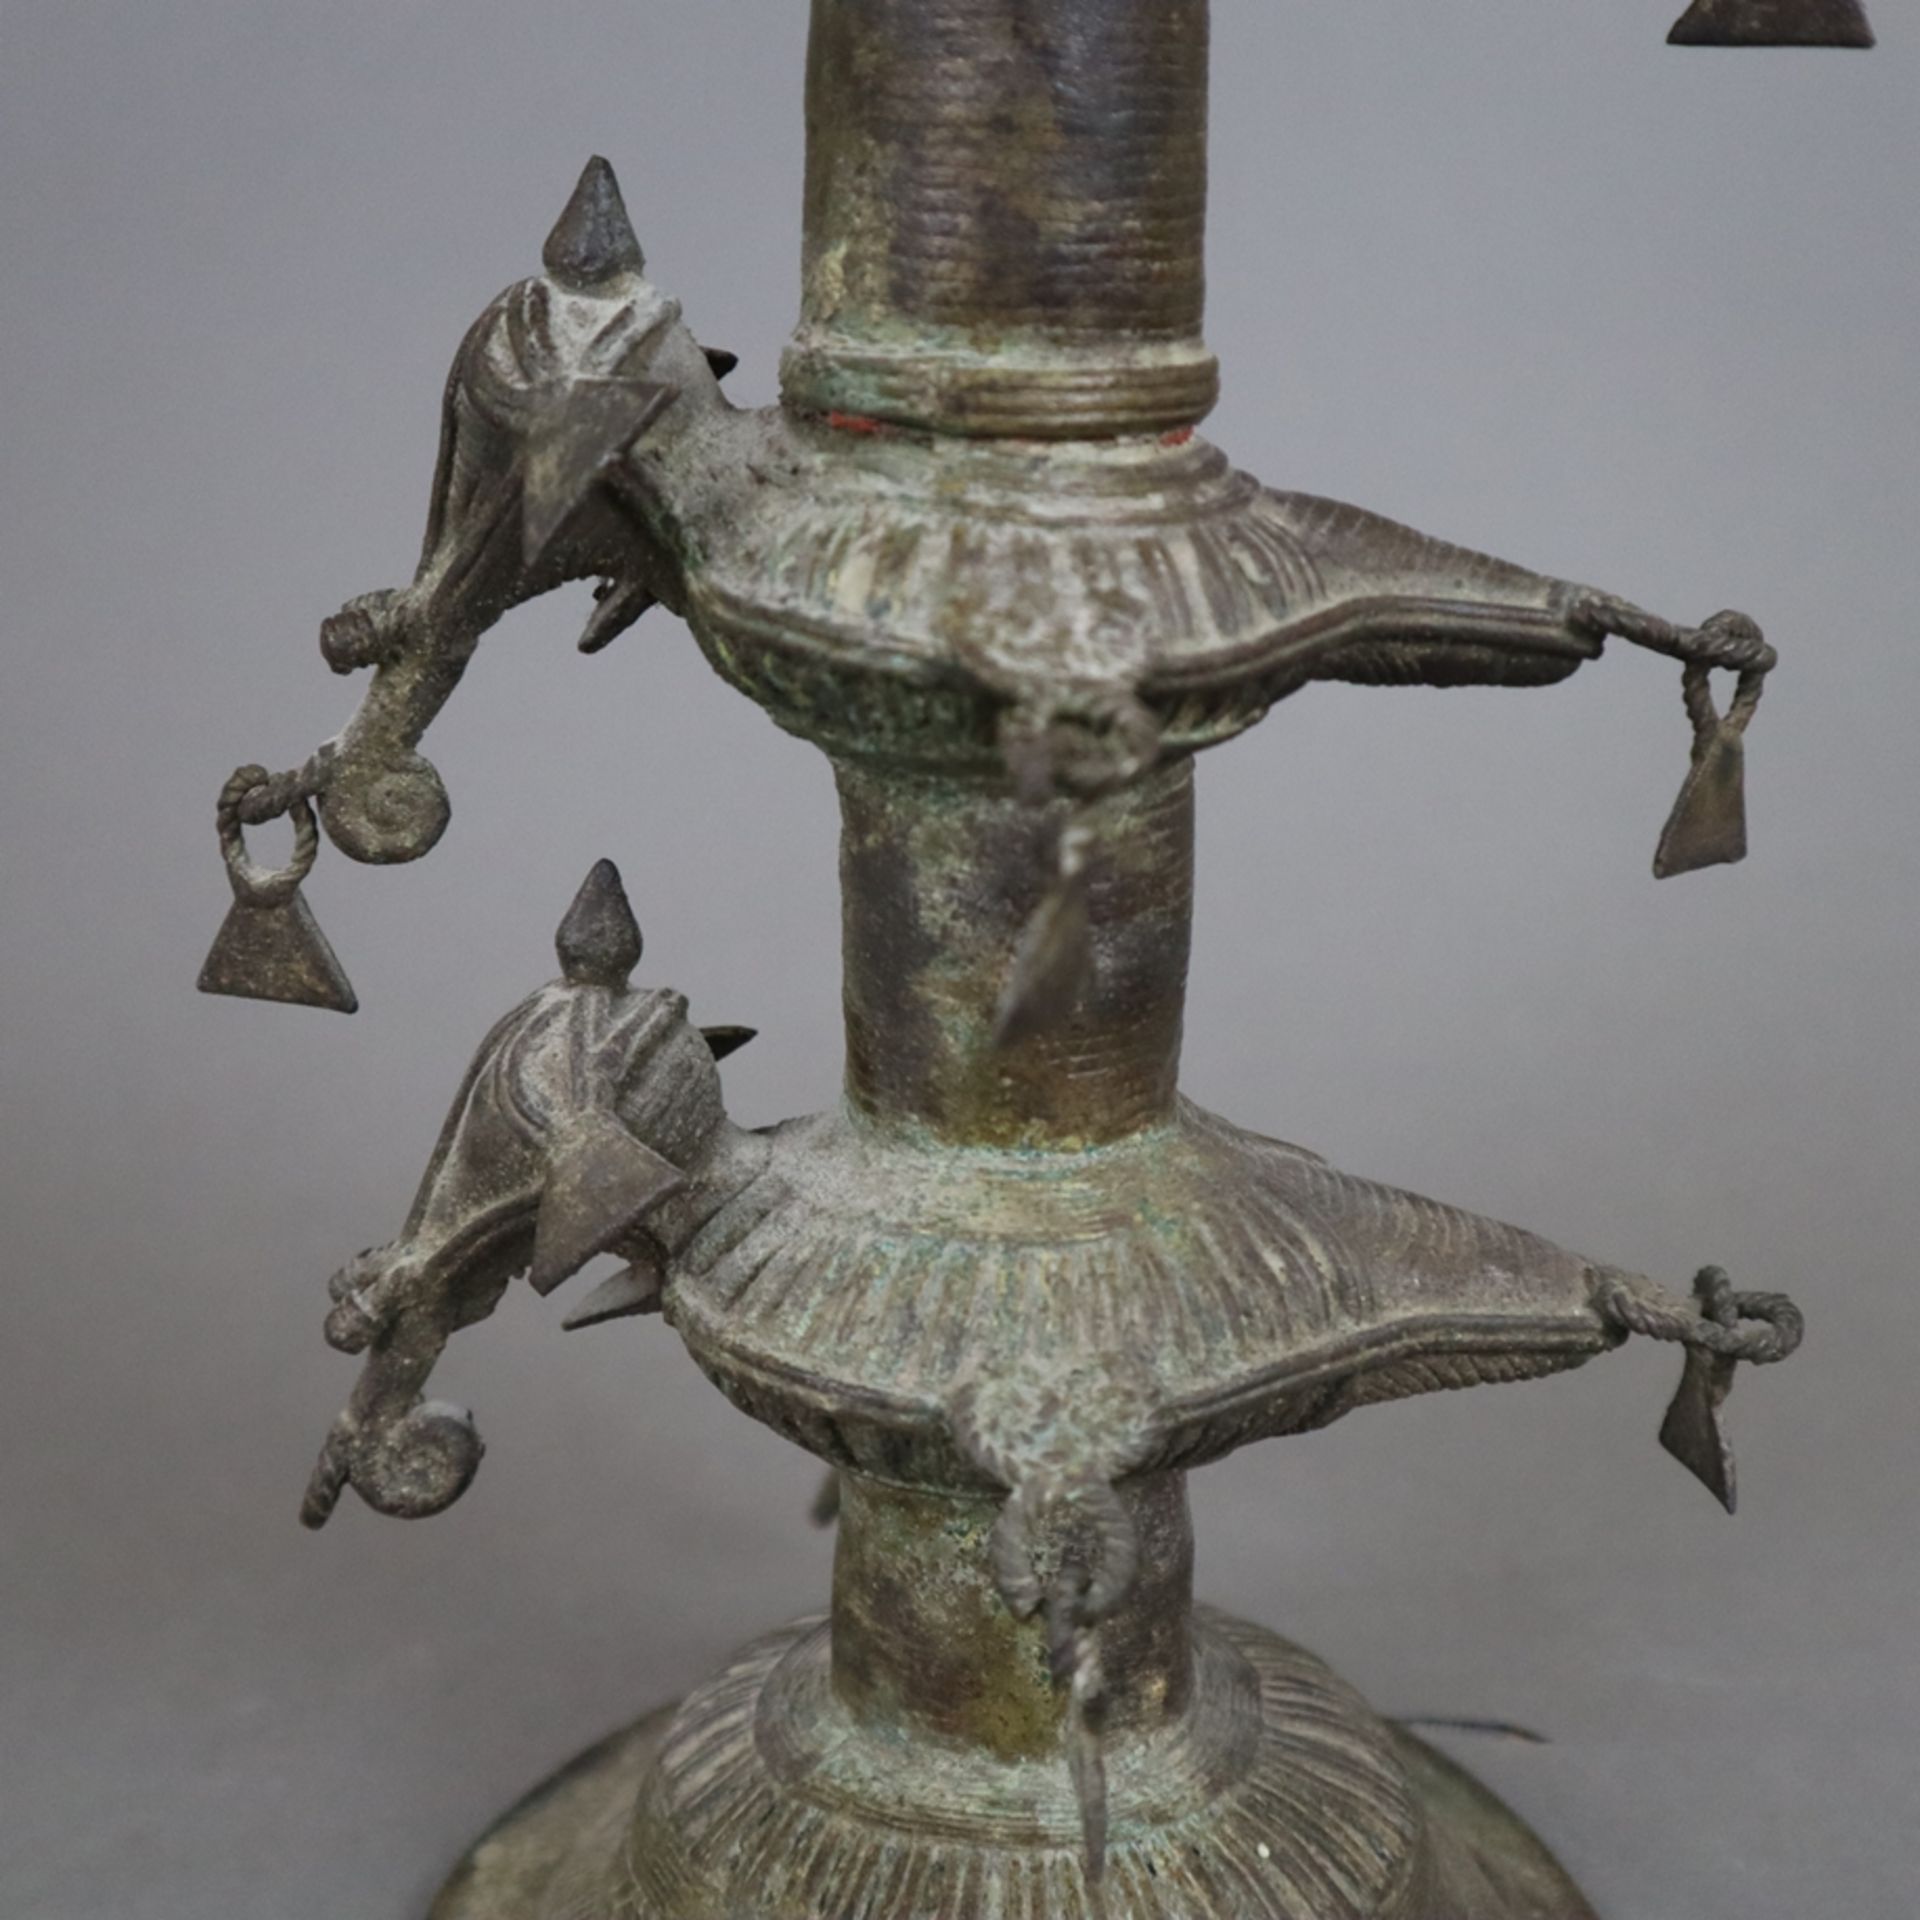 Hohe Öllampe - Indien, Bastar-Region, Bronze mit Alterspatina, über gewölbtem Fuß gegliederter Scha - Image 8 of 9